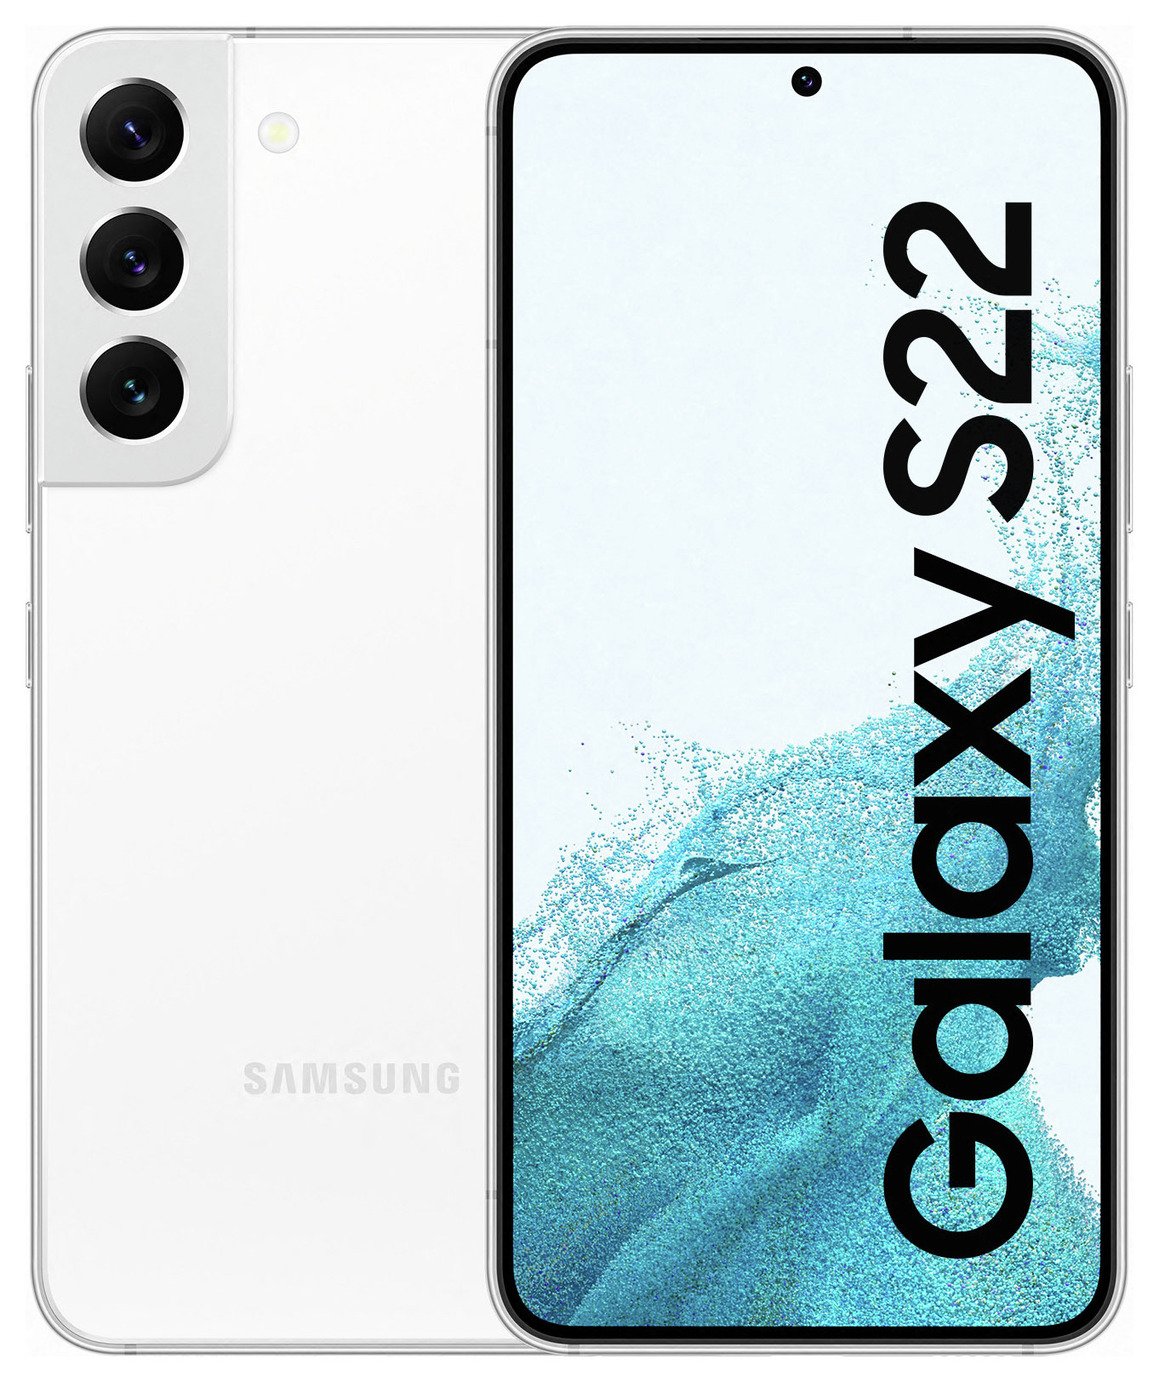 SIM Free Samsung S22 5G 128GB Mobile Phone - White